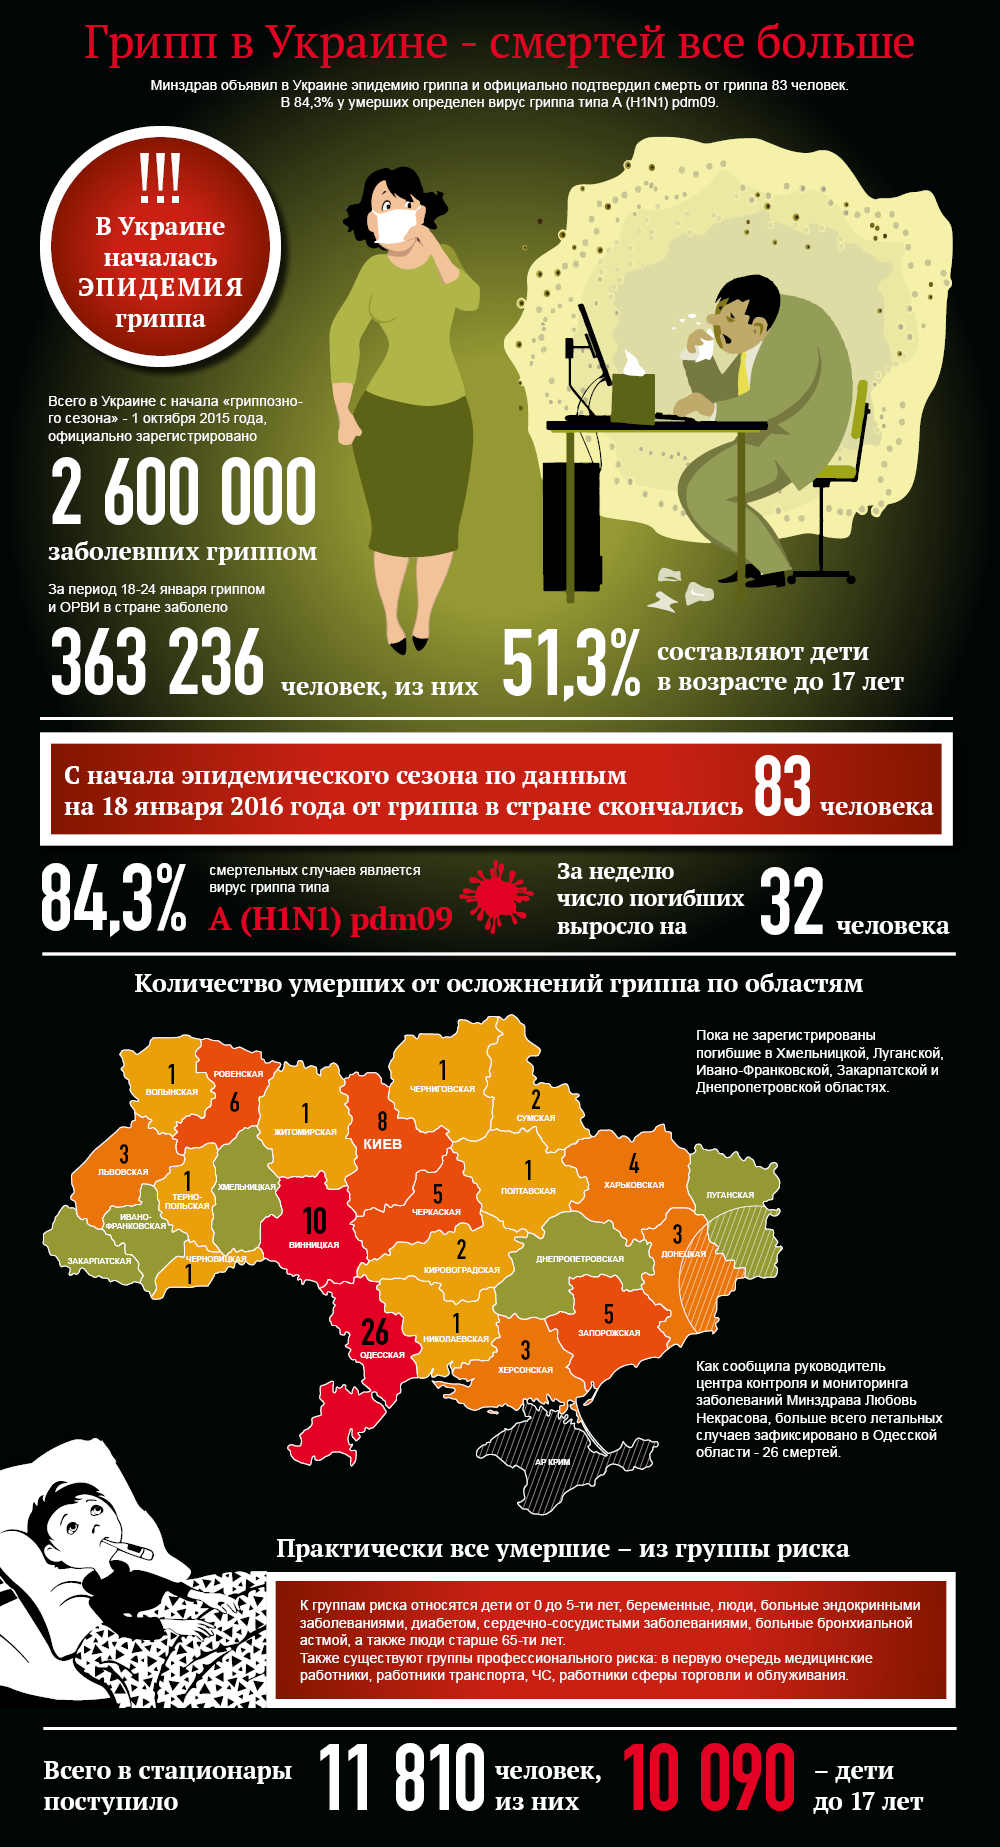 Грипп в Украине - смертей все больше. Инфорафика